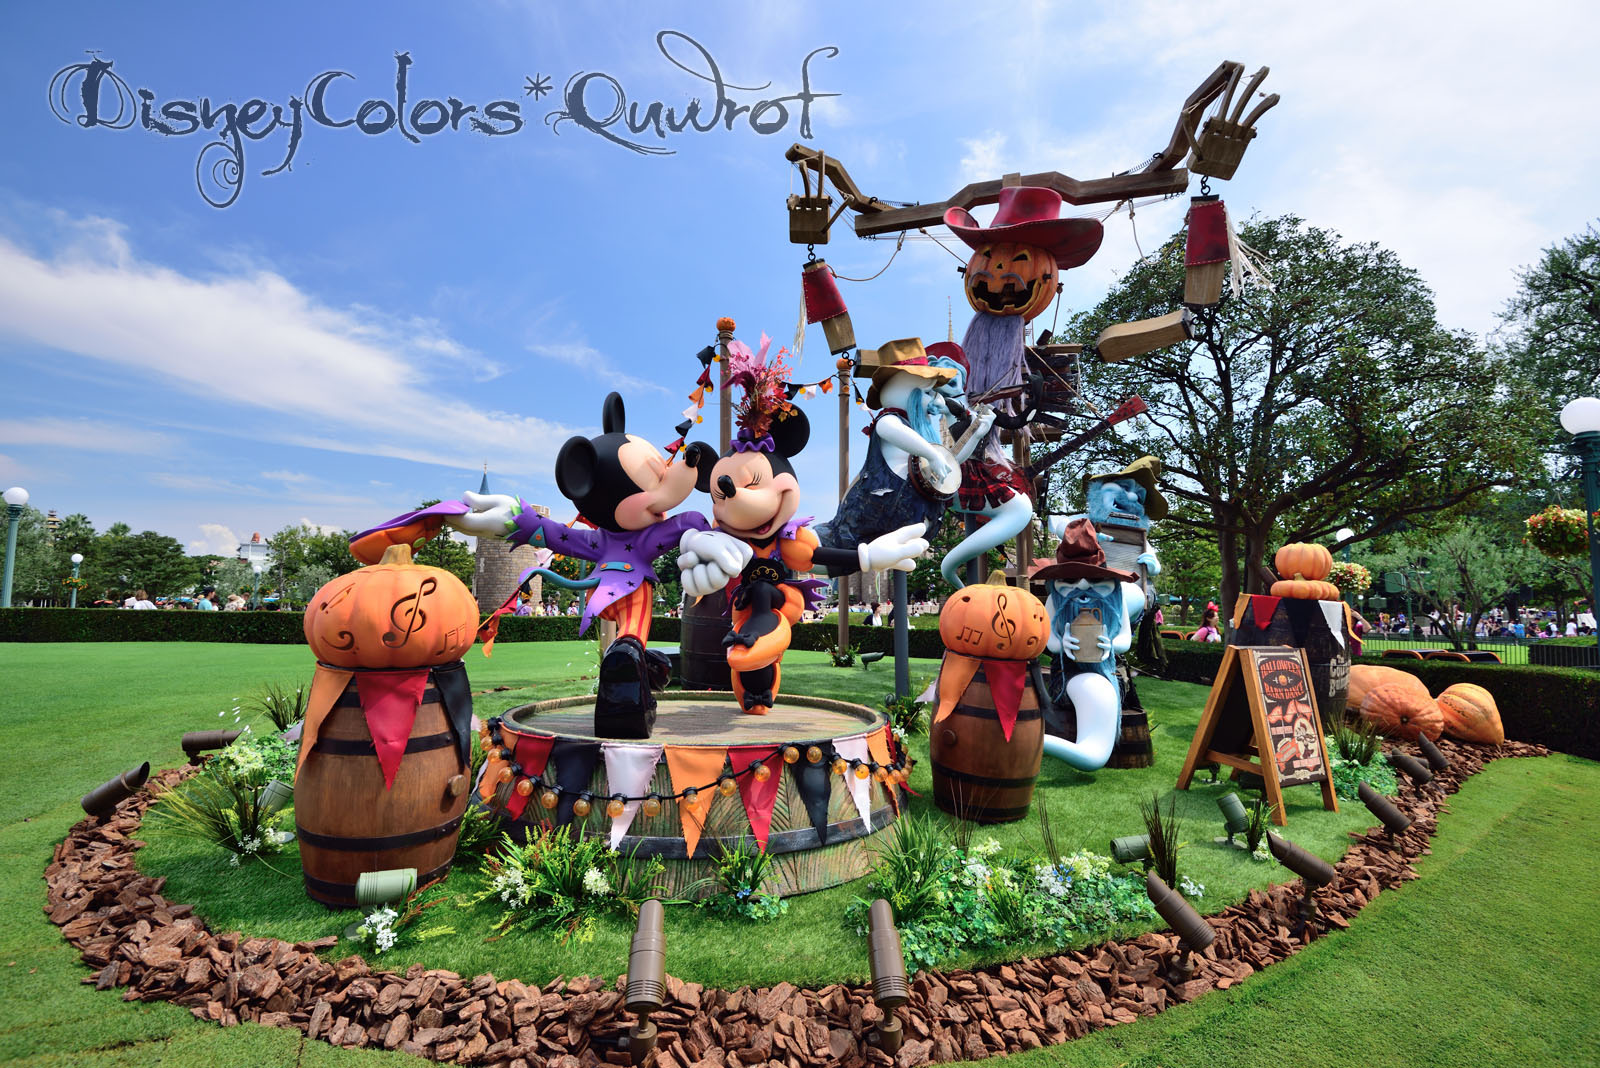 今年も収穫祭のハロウィンがやってきた ディズニーランド ディズニー ハロウィーン15 パークデコレーション Disney Colors Blog